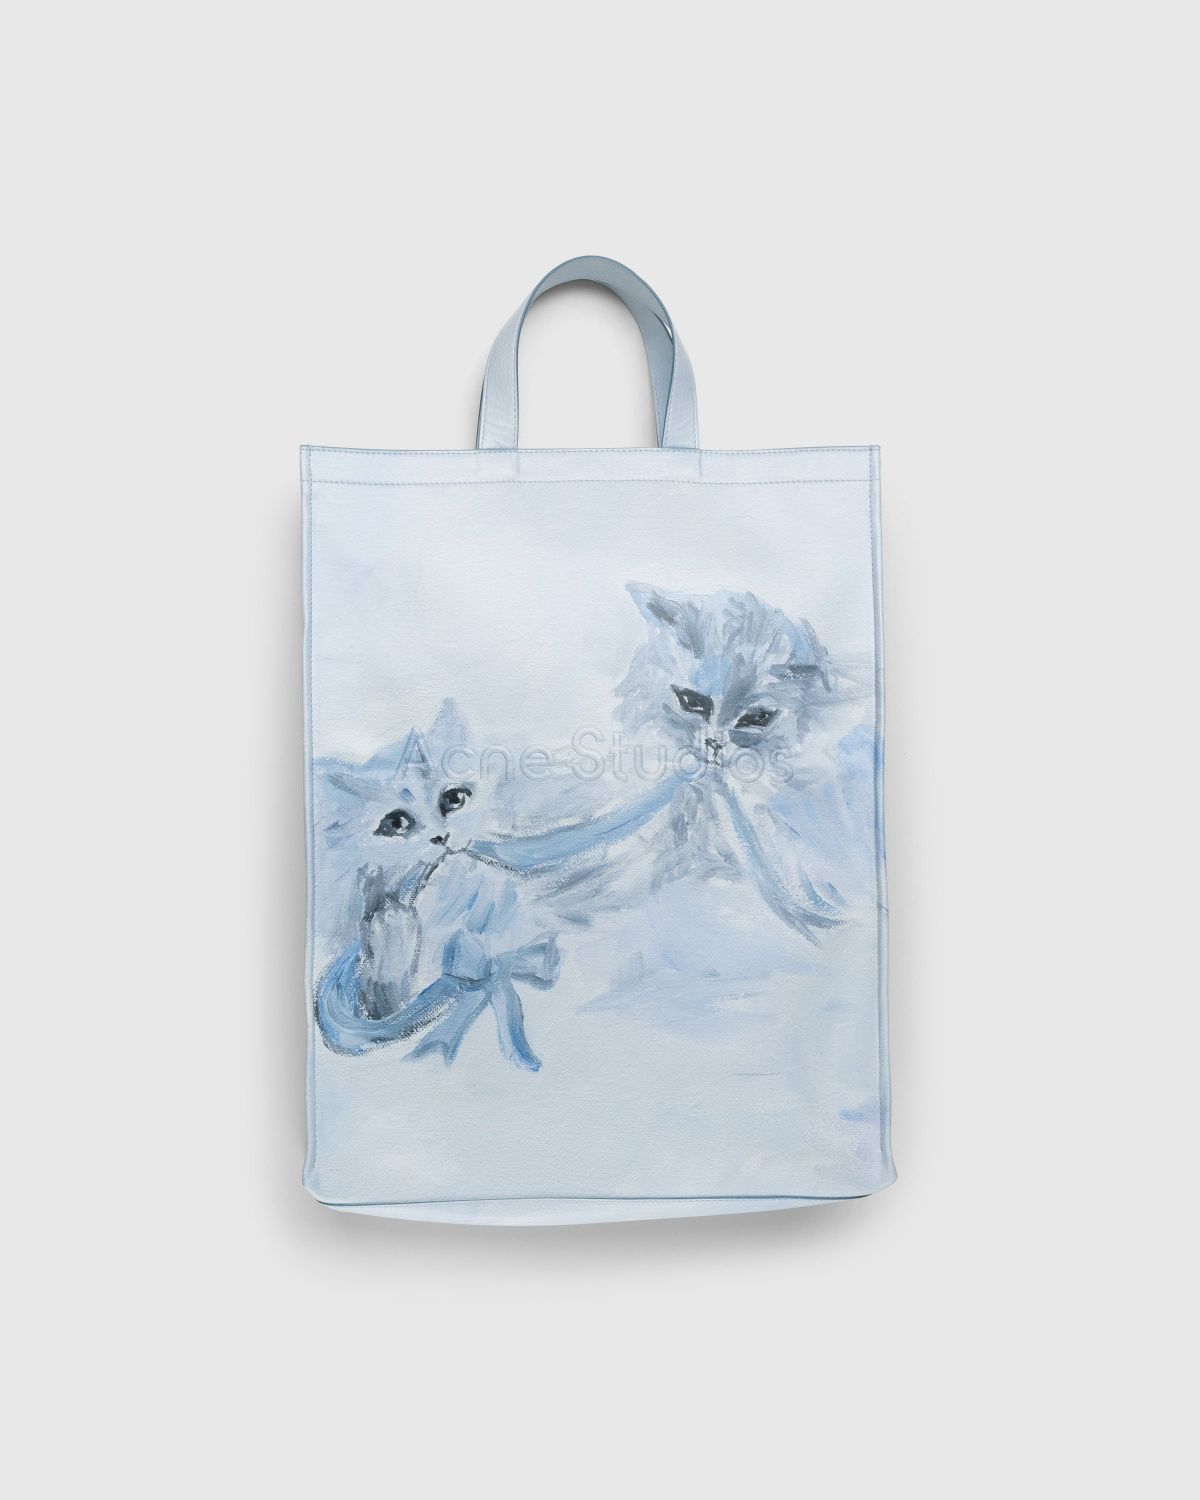 Acne Studios – Cat Print Logo Tote Bag Blue - Bags - Blue - Image 1